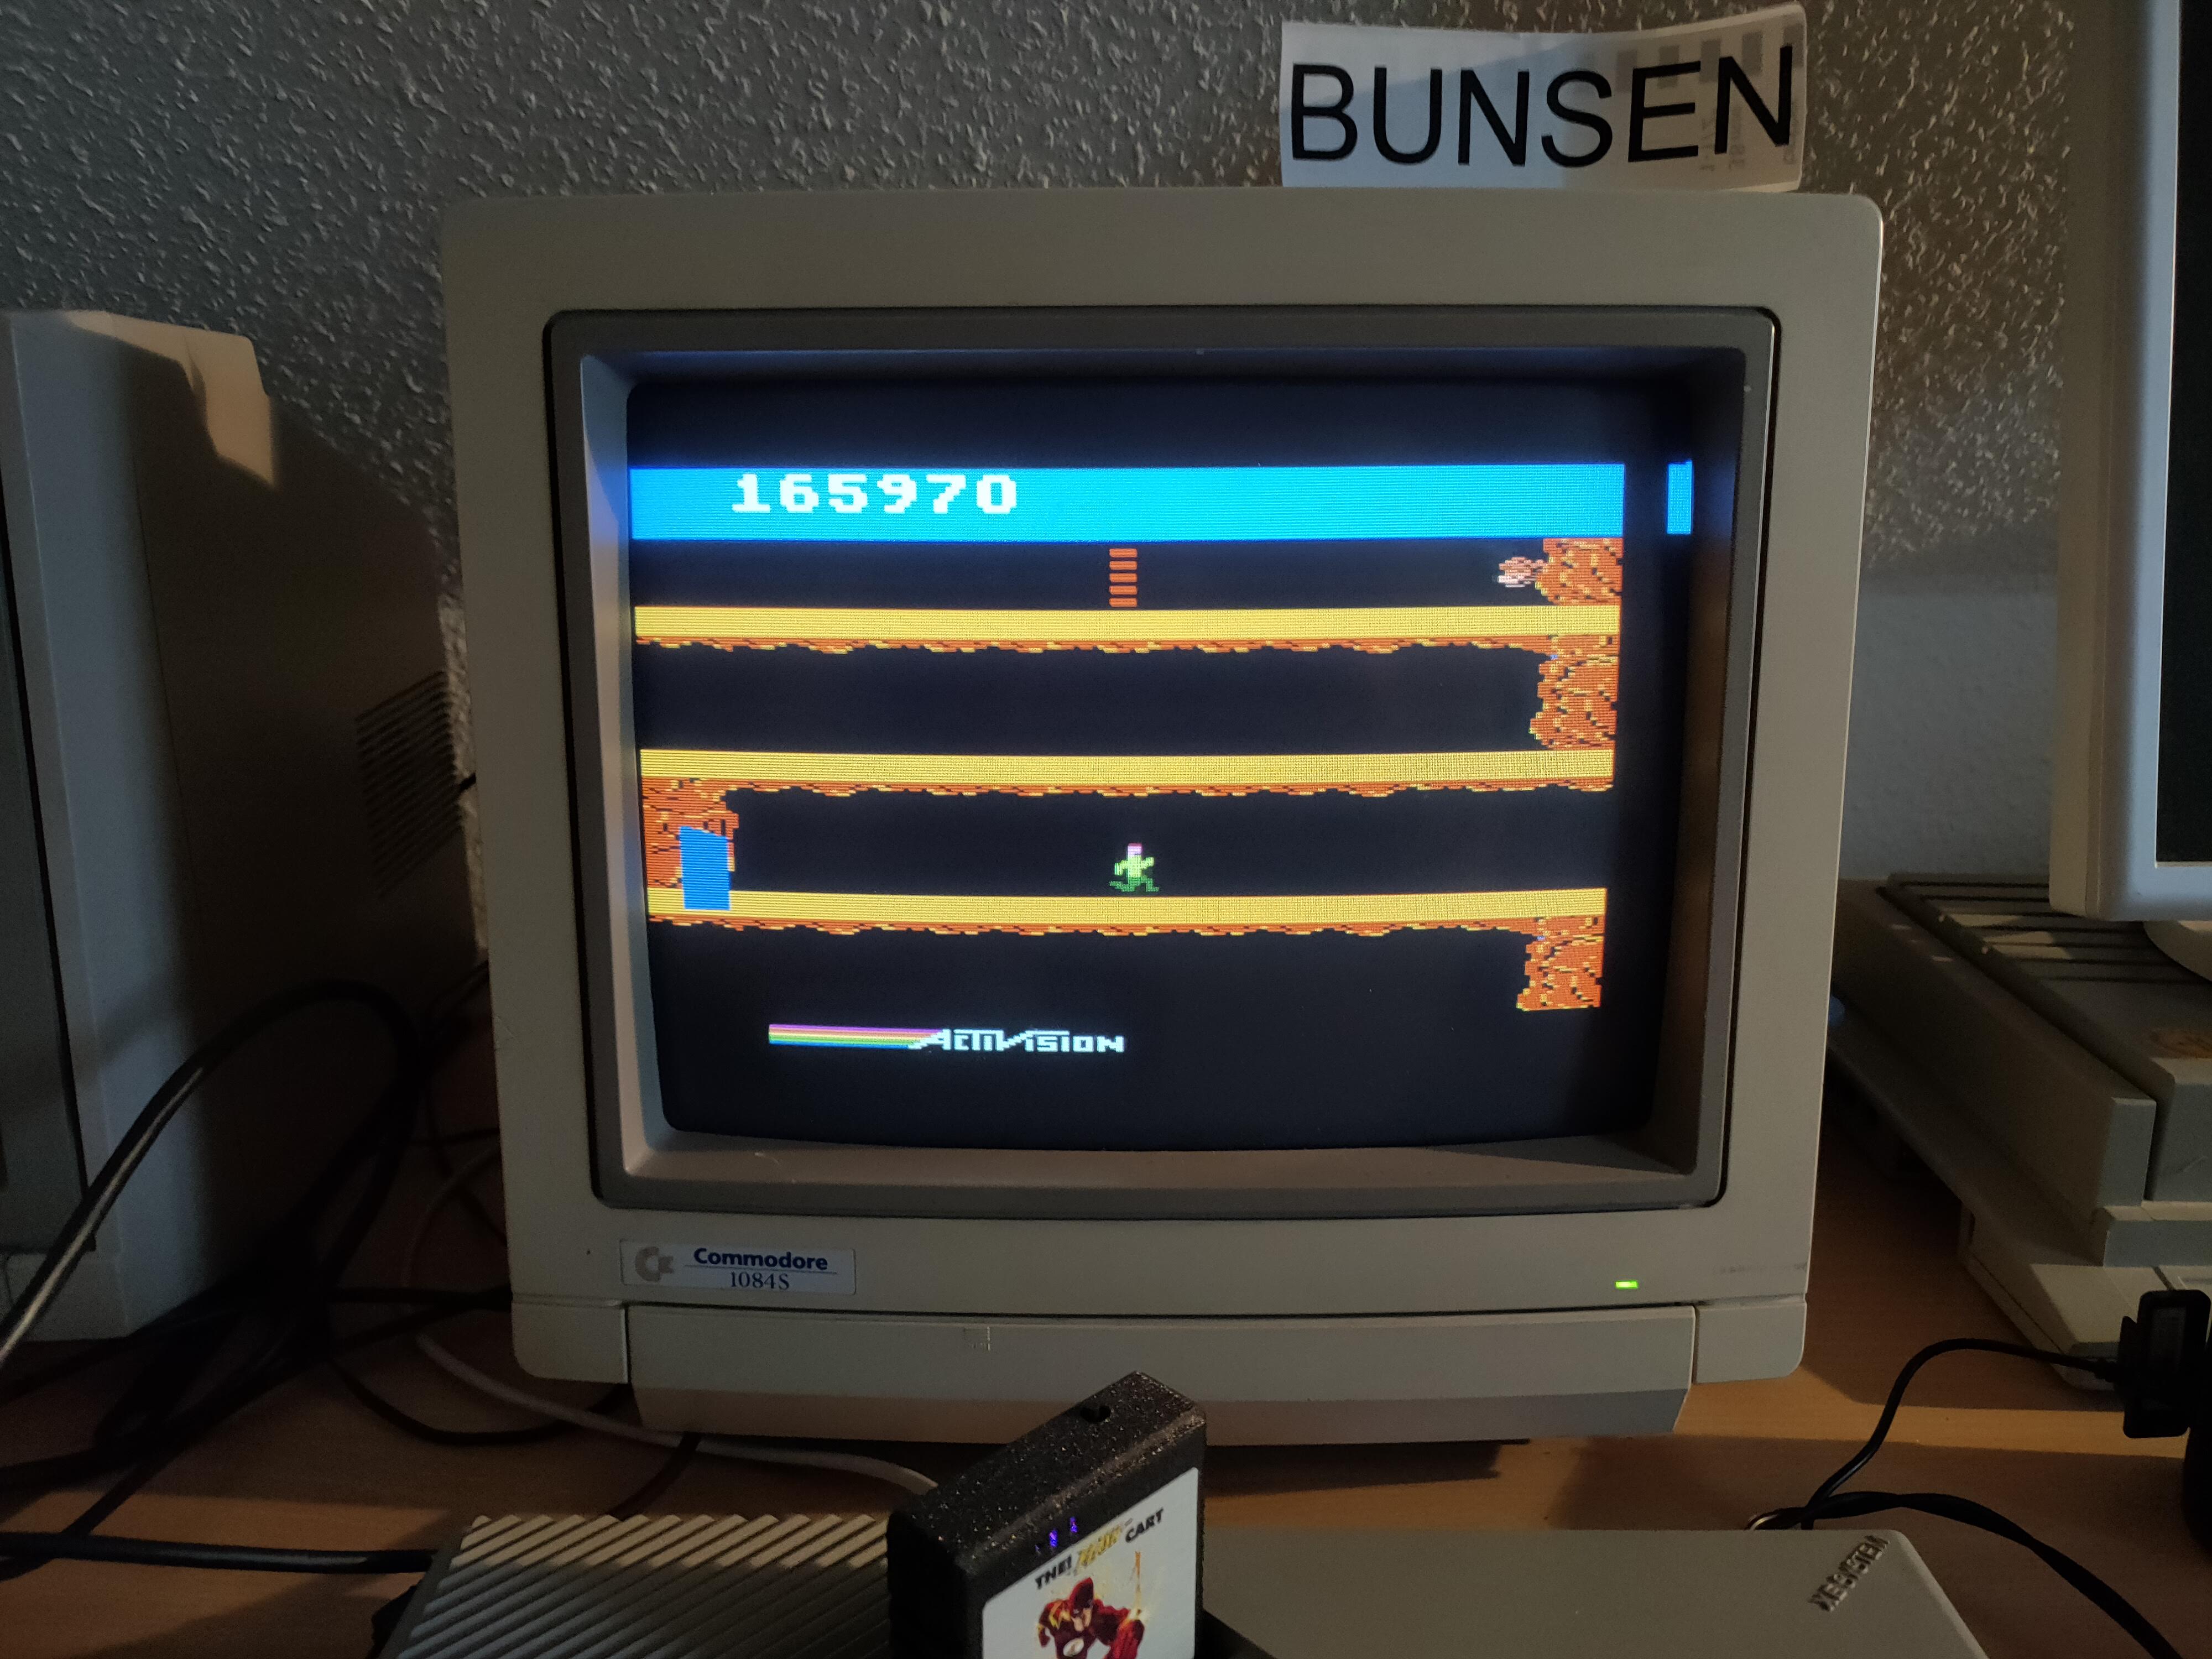 Bunsen: Pitfall II (Atari 400/800/XL/XE) 165,970 points on 2022-12-24 07:00:26